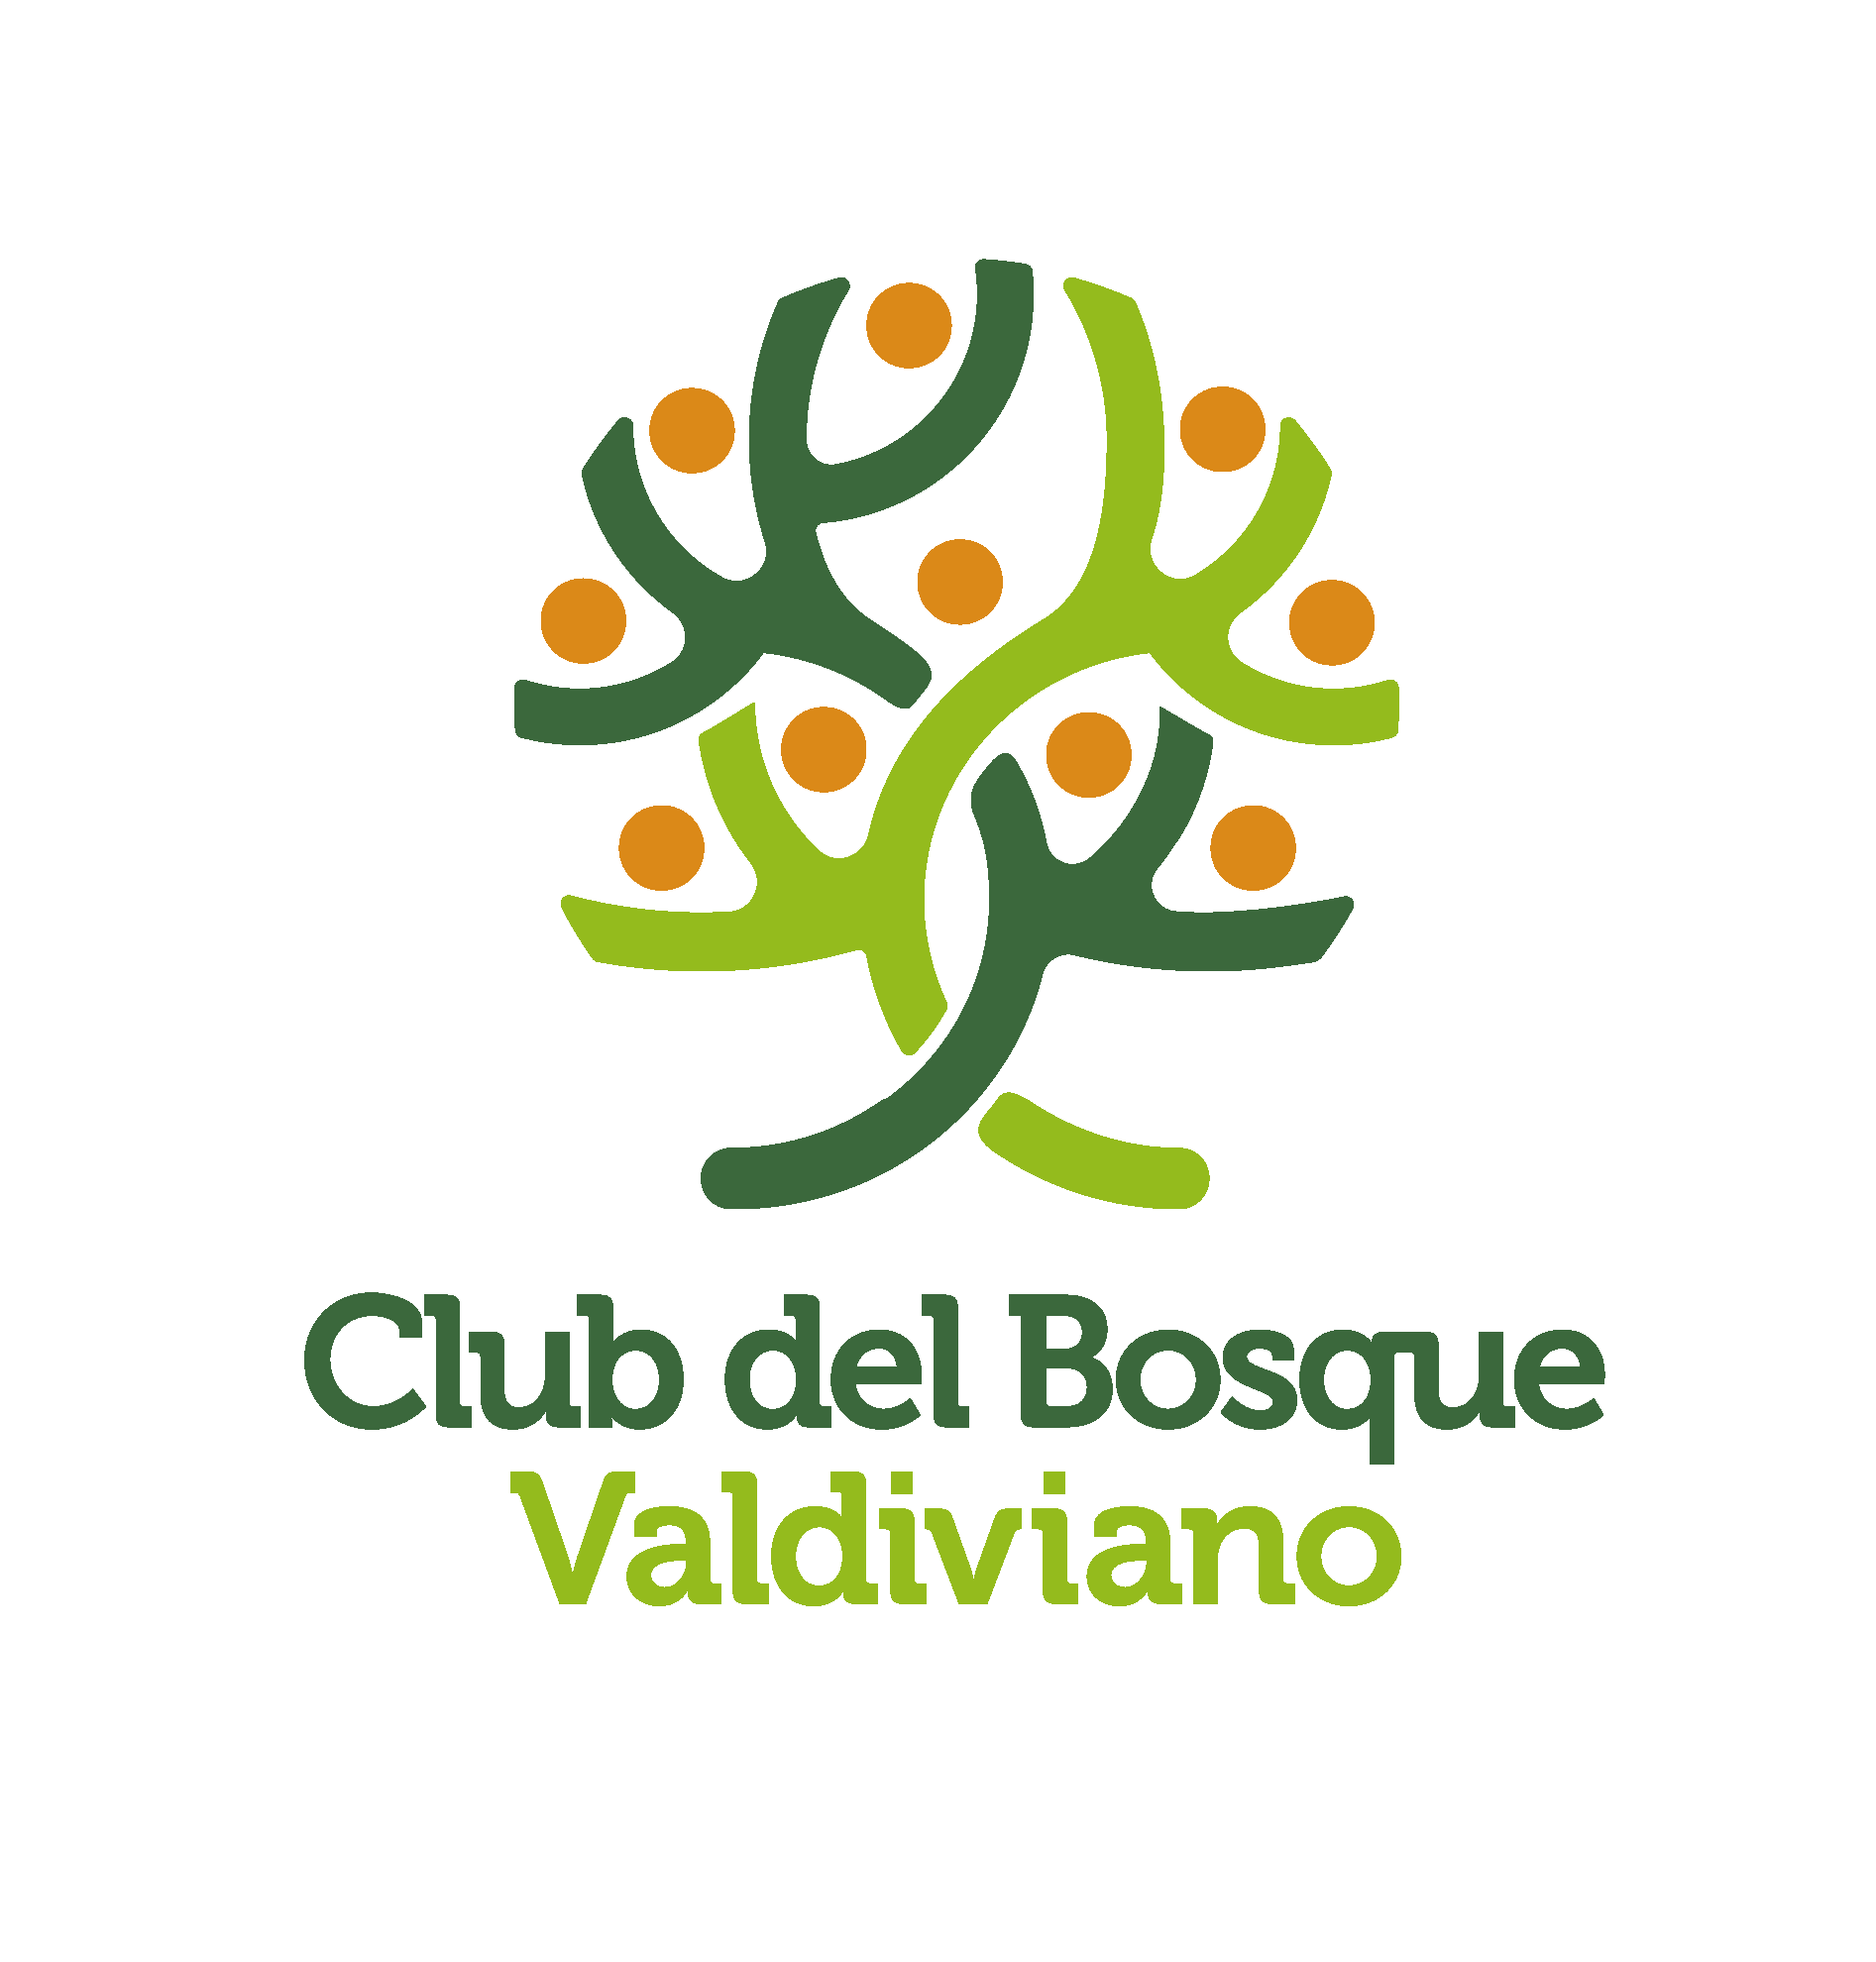 Club del Bosque Valdiviano